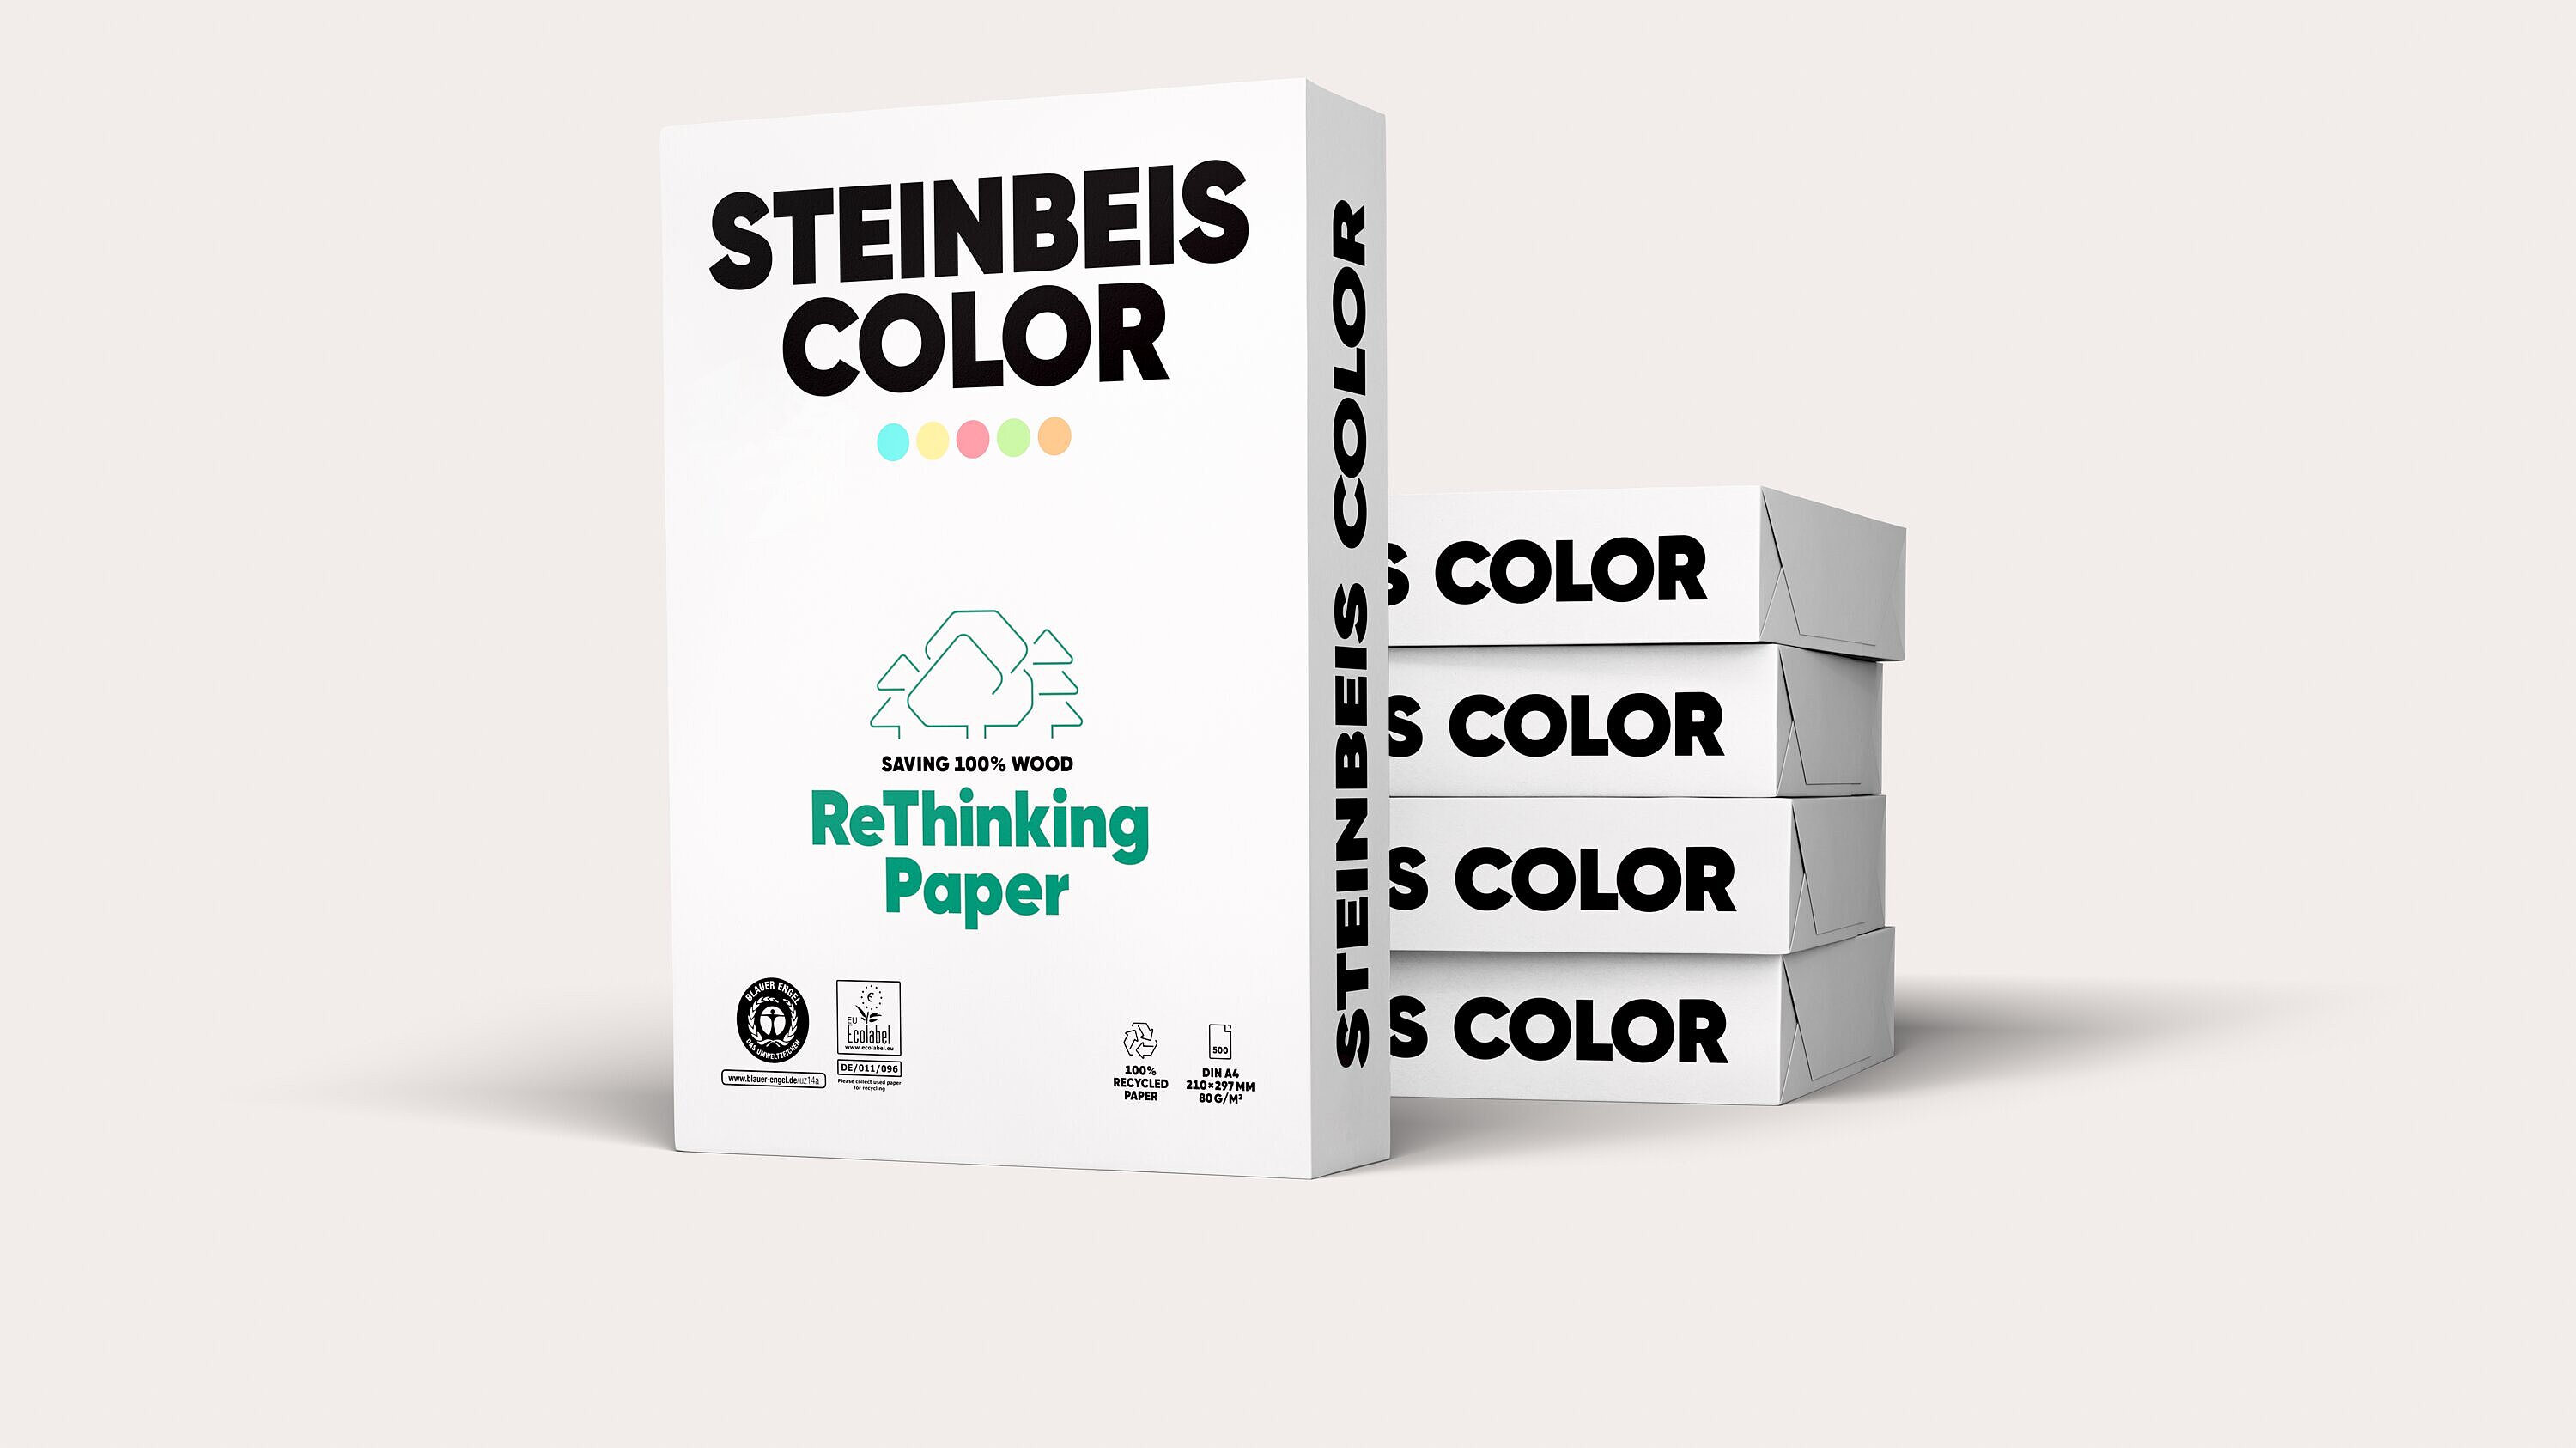 Druck- und Kopierpapier Steinbeis Color